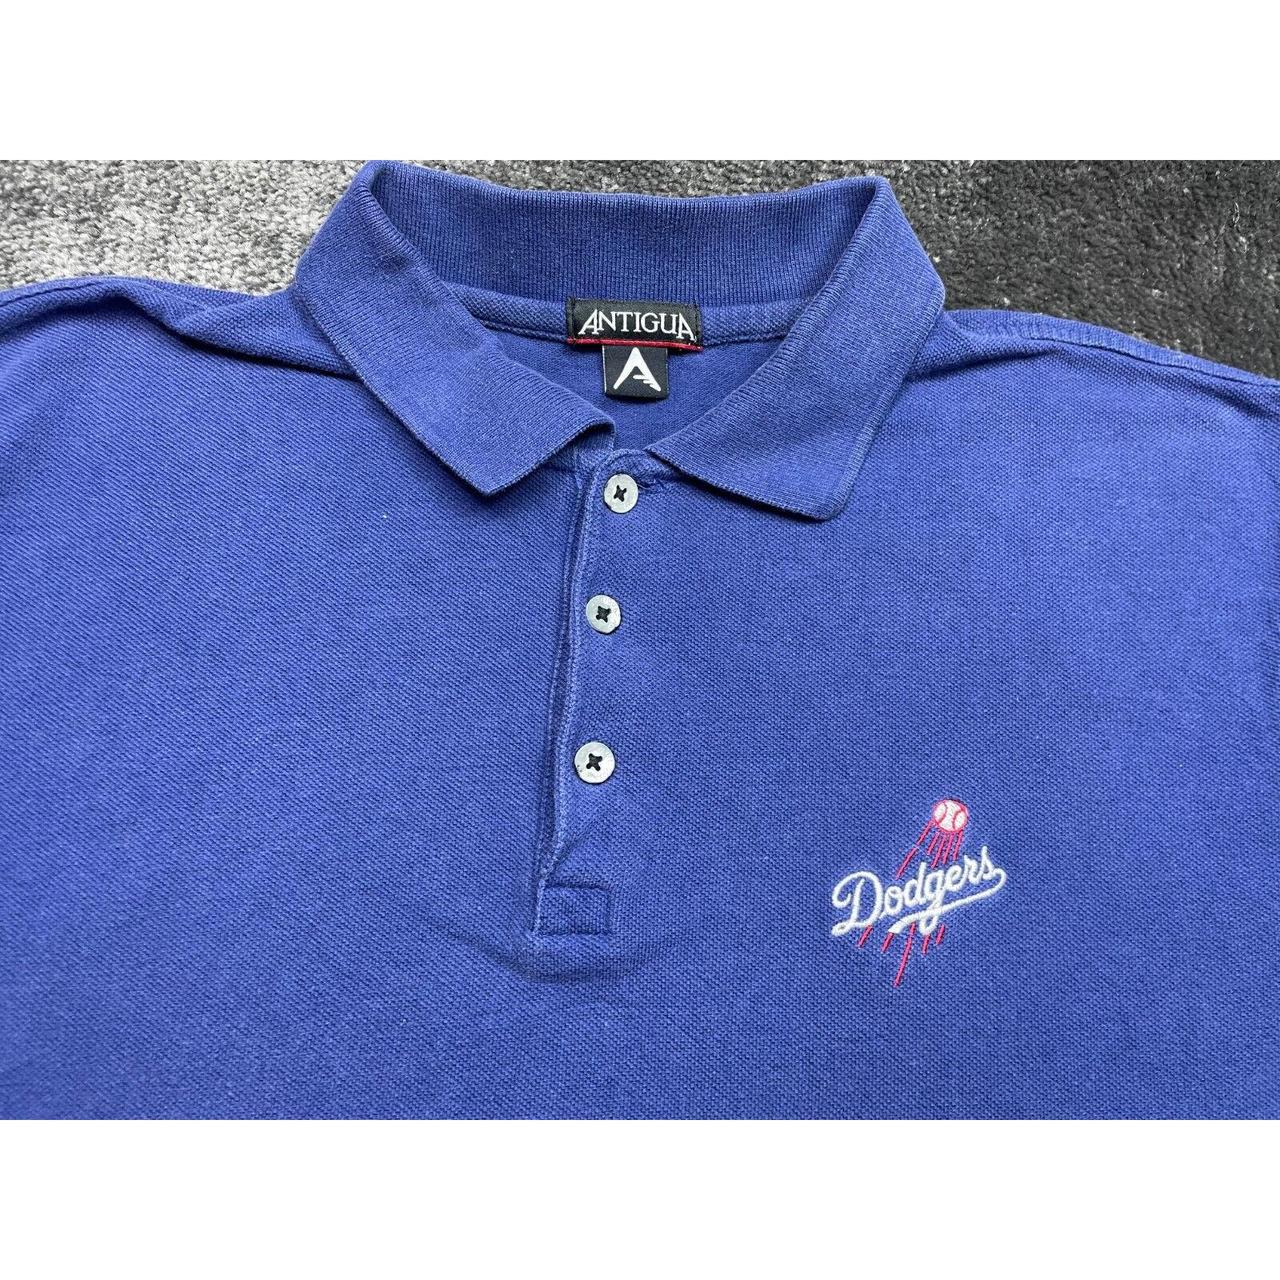 Polo Ralph Lauren Dodgers Polo Shirt - Depop